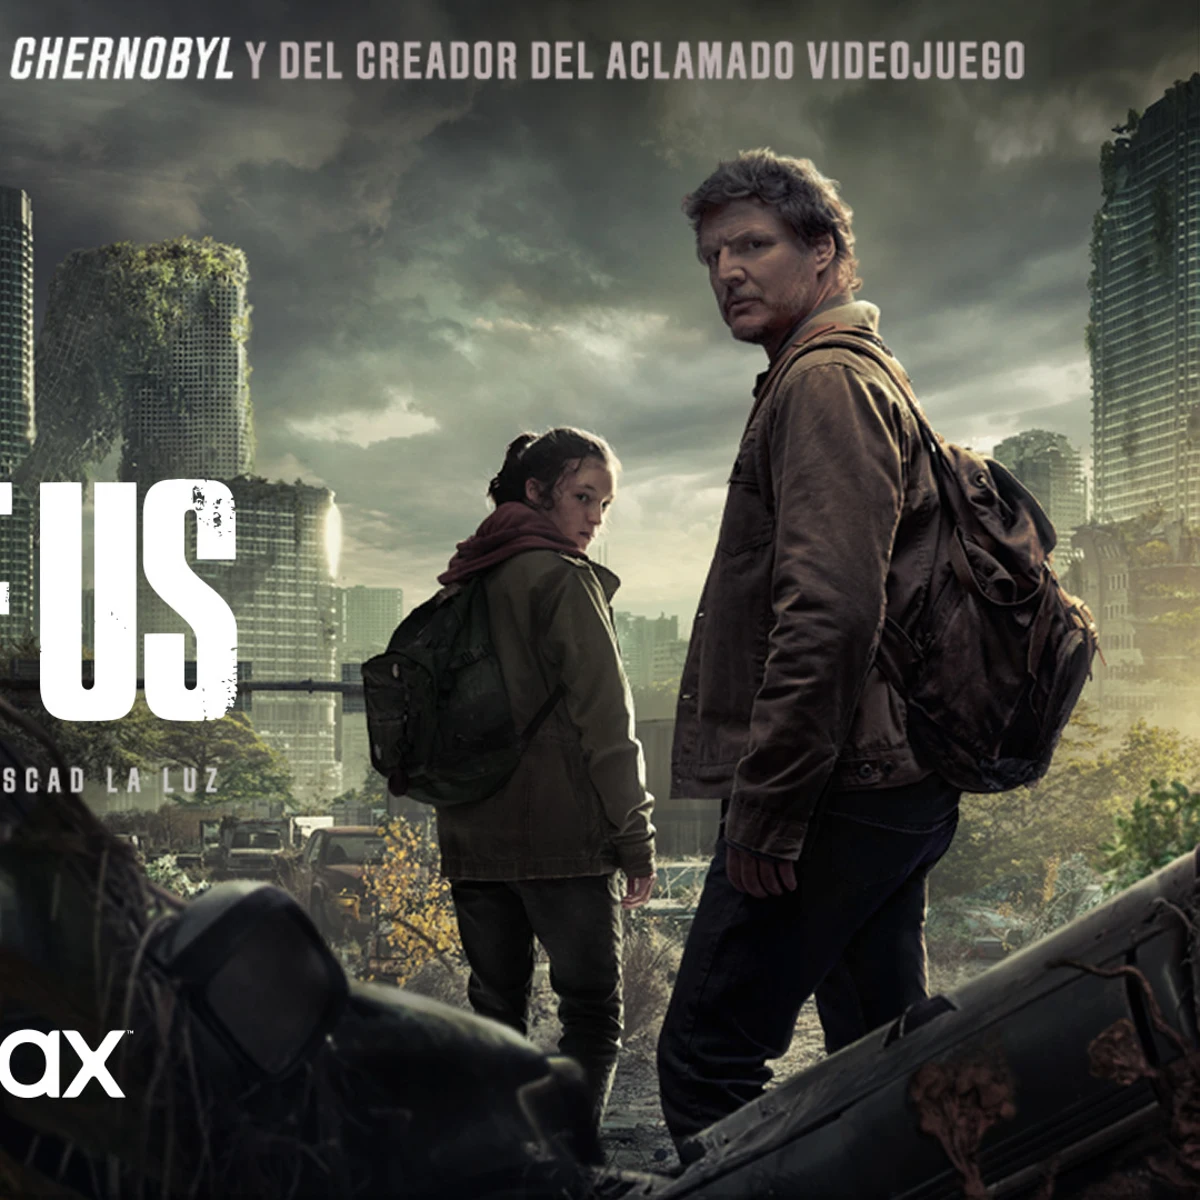 La nueva serie 'The Last Of Us' de HBO recibe la batuta de los shows de  zombis en TV